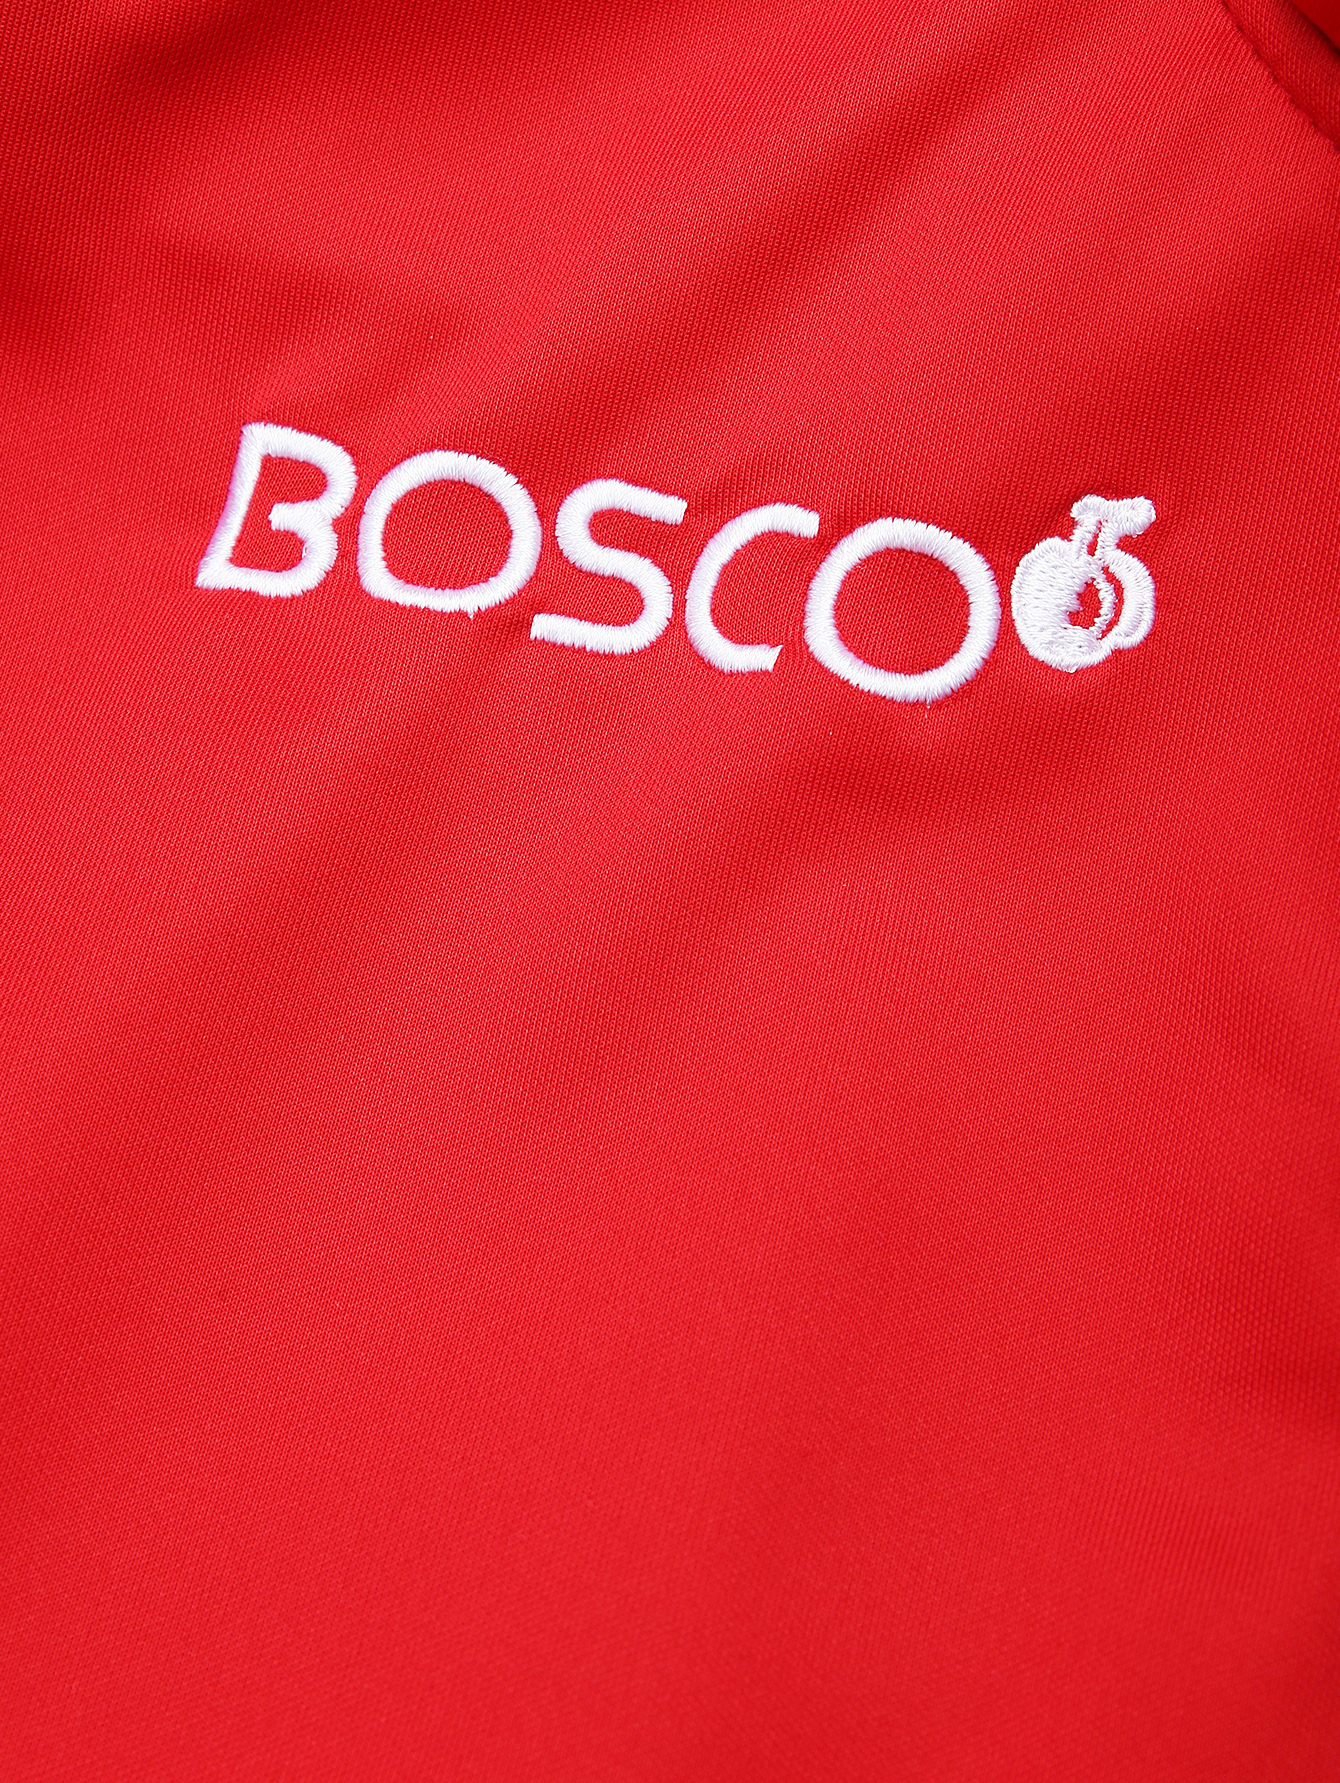 Боско. Боско спортивная одежда. Логотип Боско спорт. Bosco спортивный костюм. Боско сайт интернет магазин